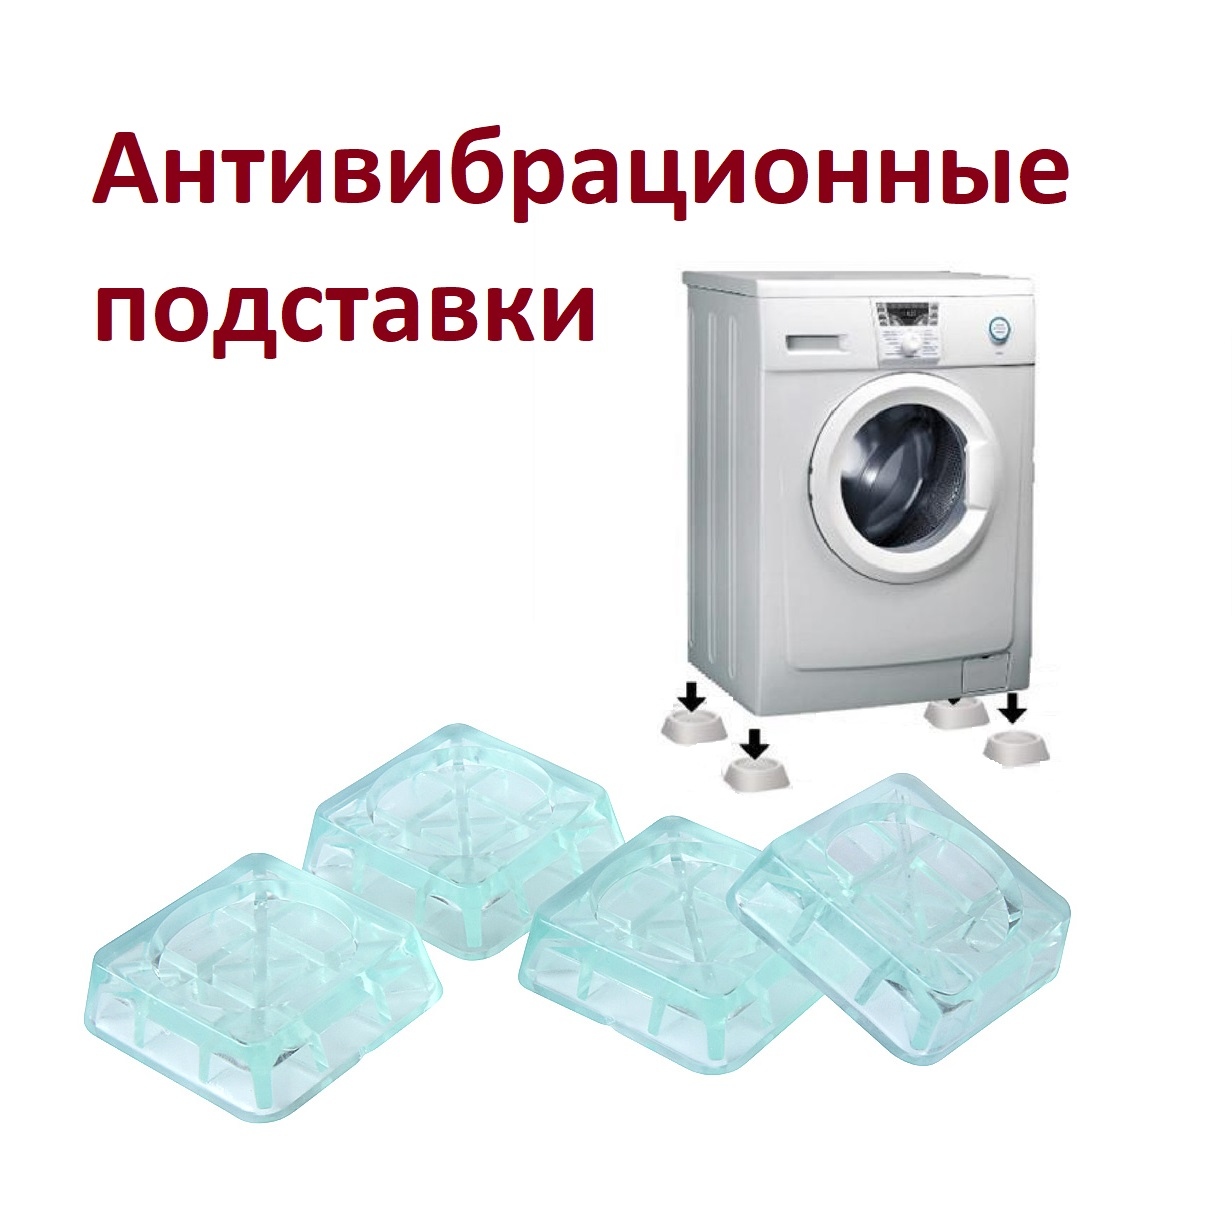  Антивибрационные подставки для стиральных машин и холодильников .